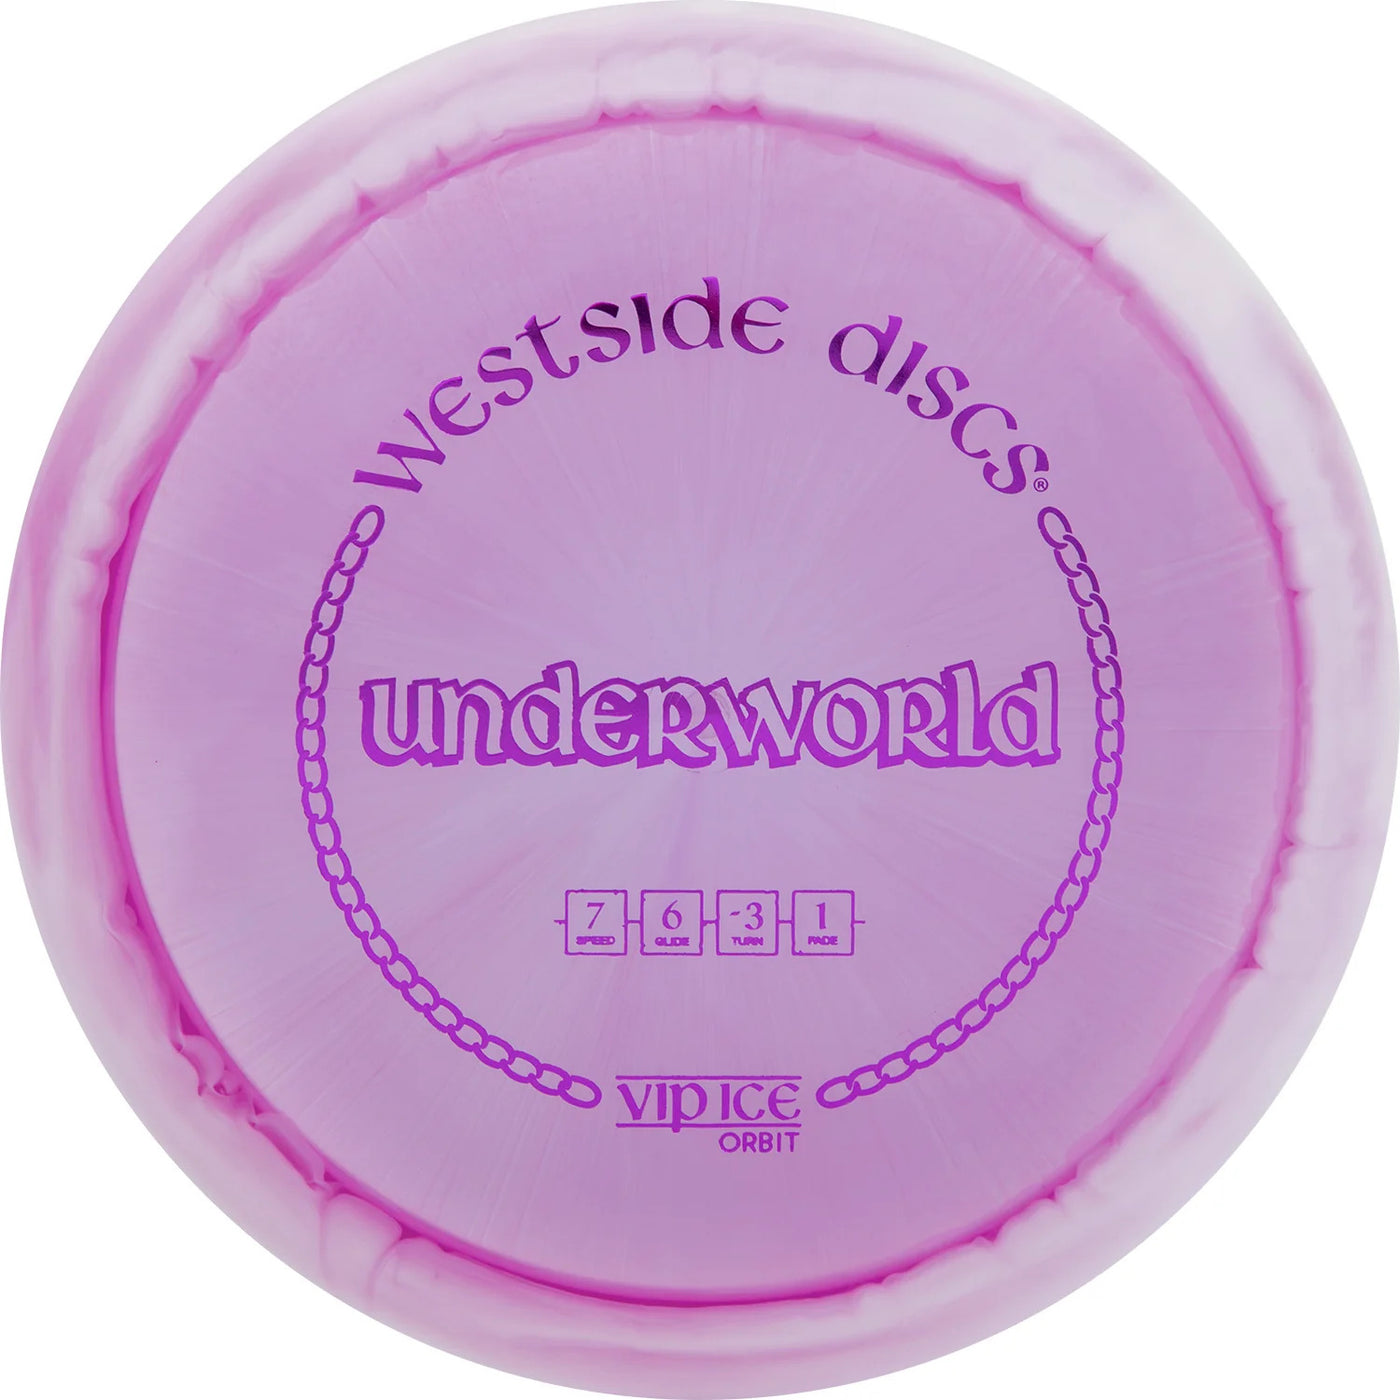 Westside VIP Ice Orbit Underworld Fairway Driver - Speed 7